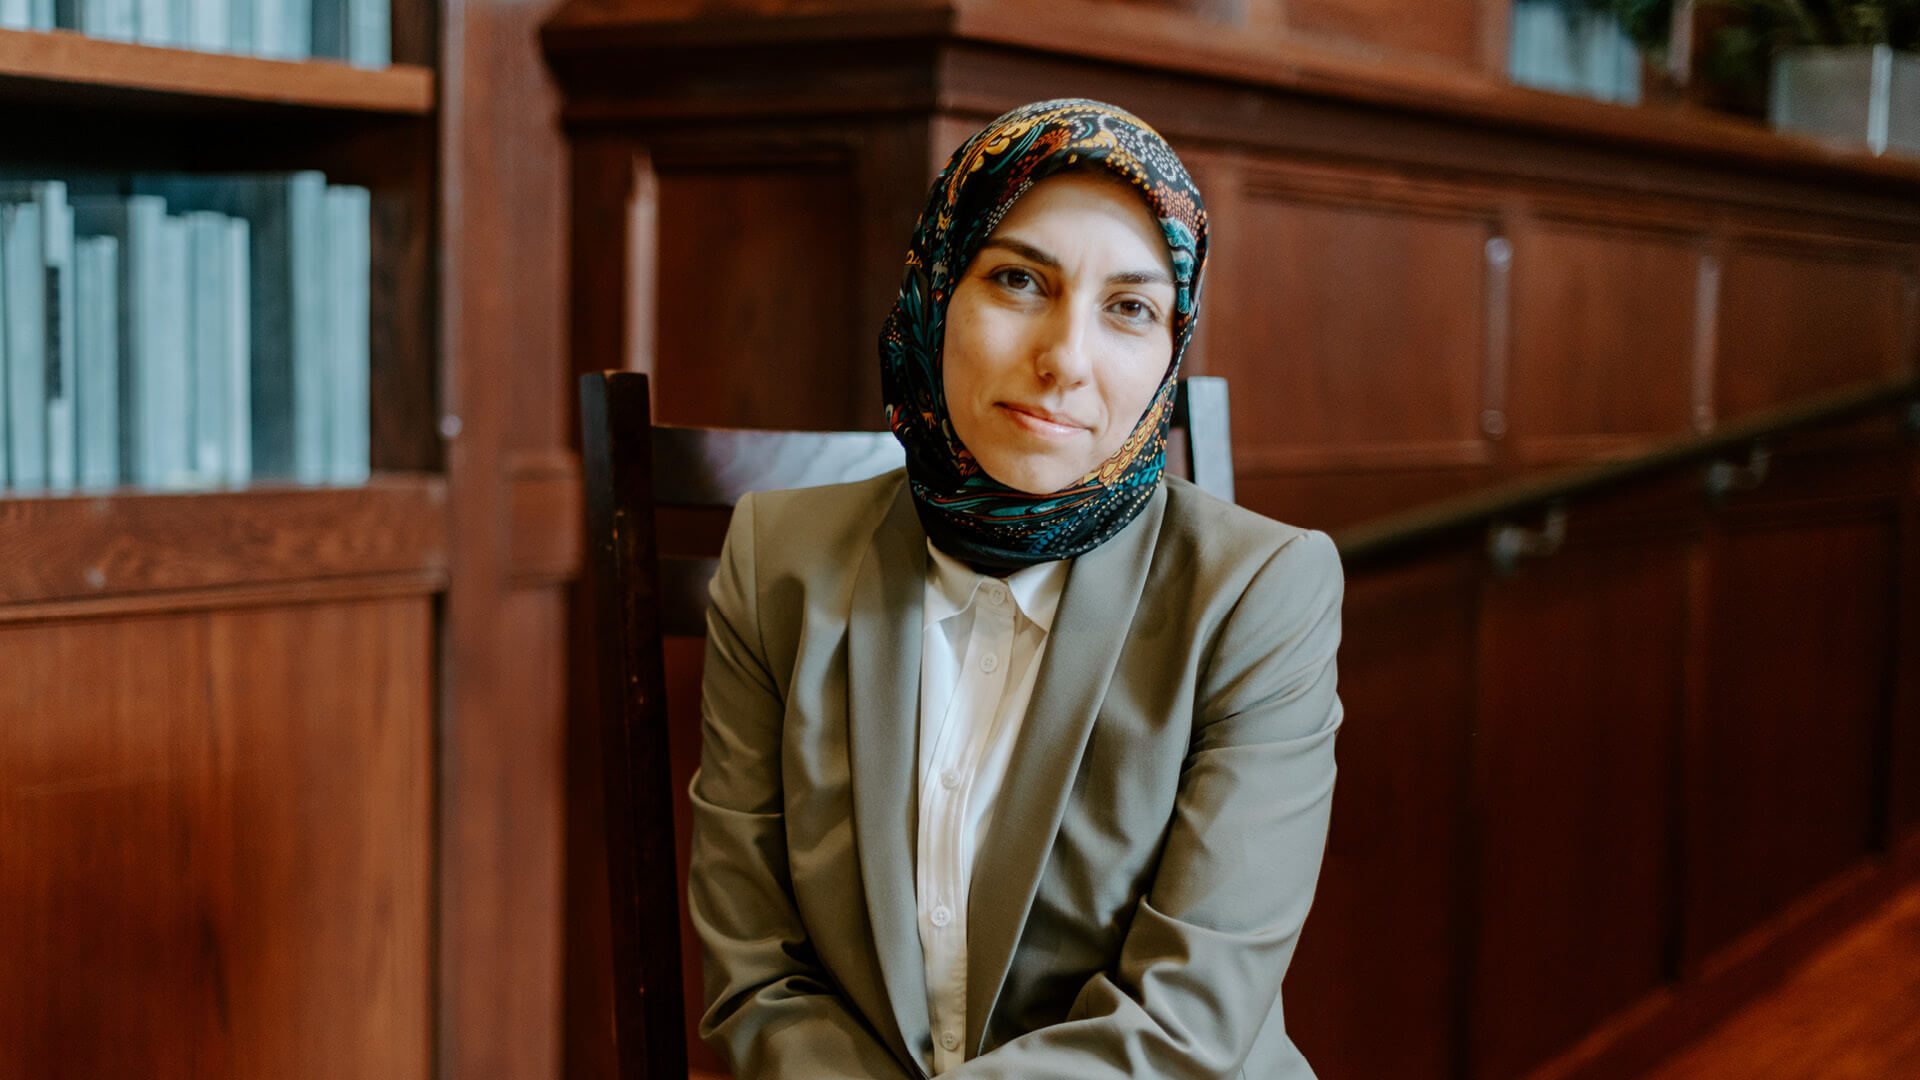 Zahra Tehrani in front of bookshelf.